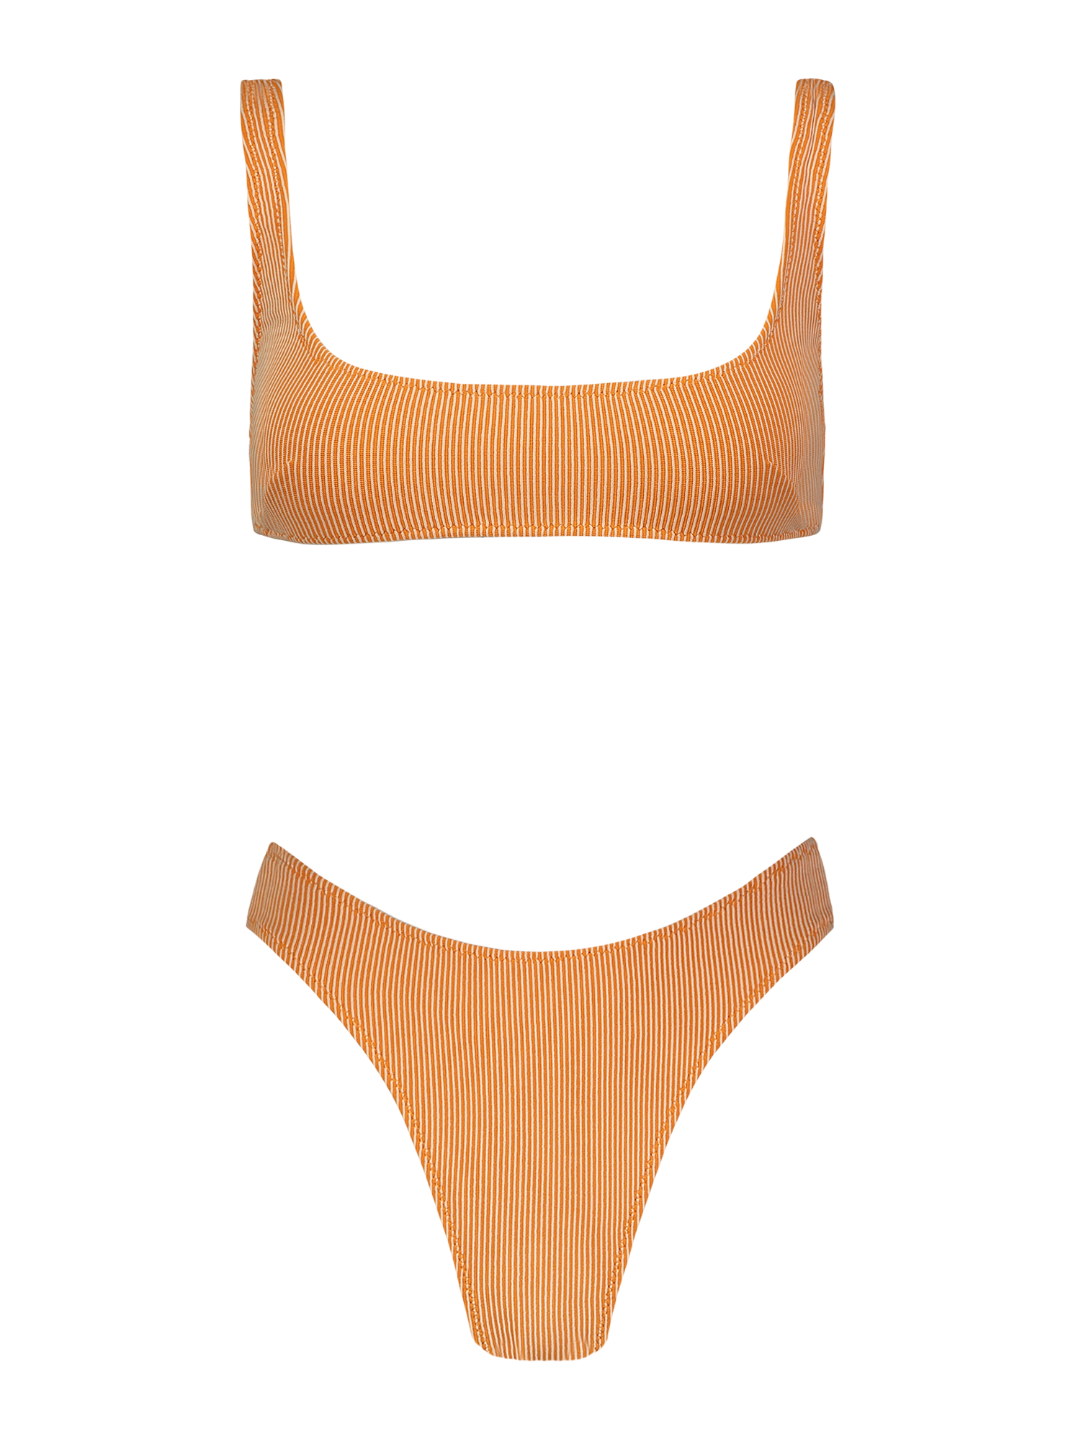 Anna Orange Rib Knit High-Cut Bikini